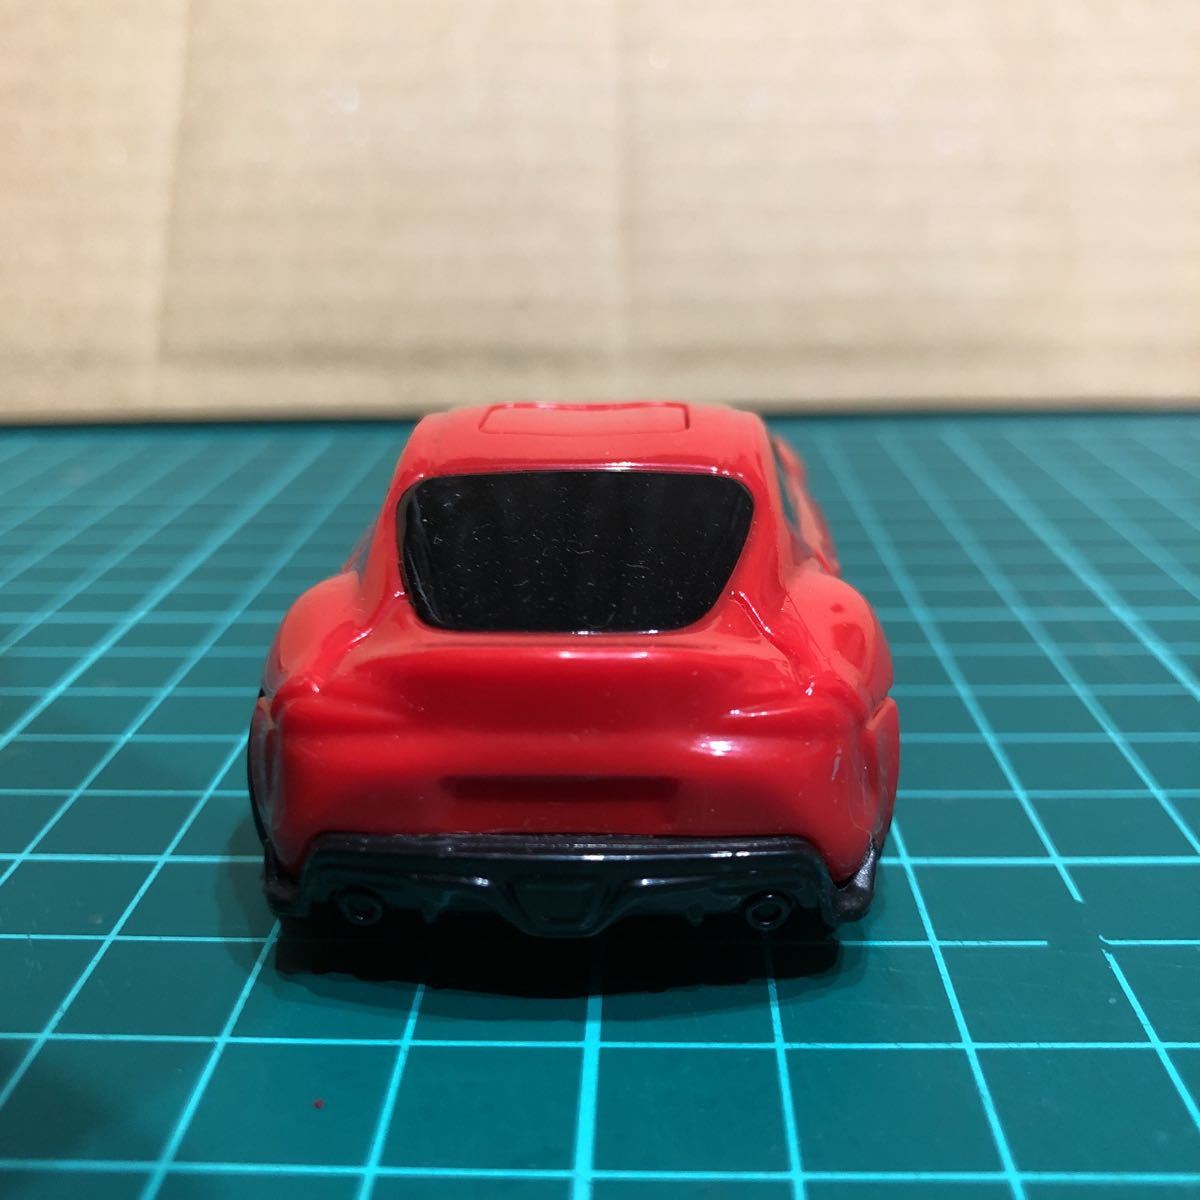 A-8 Tomica Toyota GR Supra McDonald's happy комплект миникар б/у товар прямые продажи 